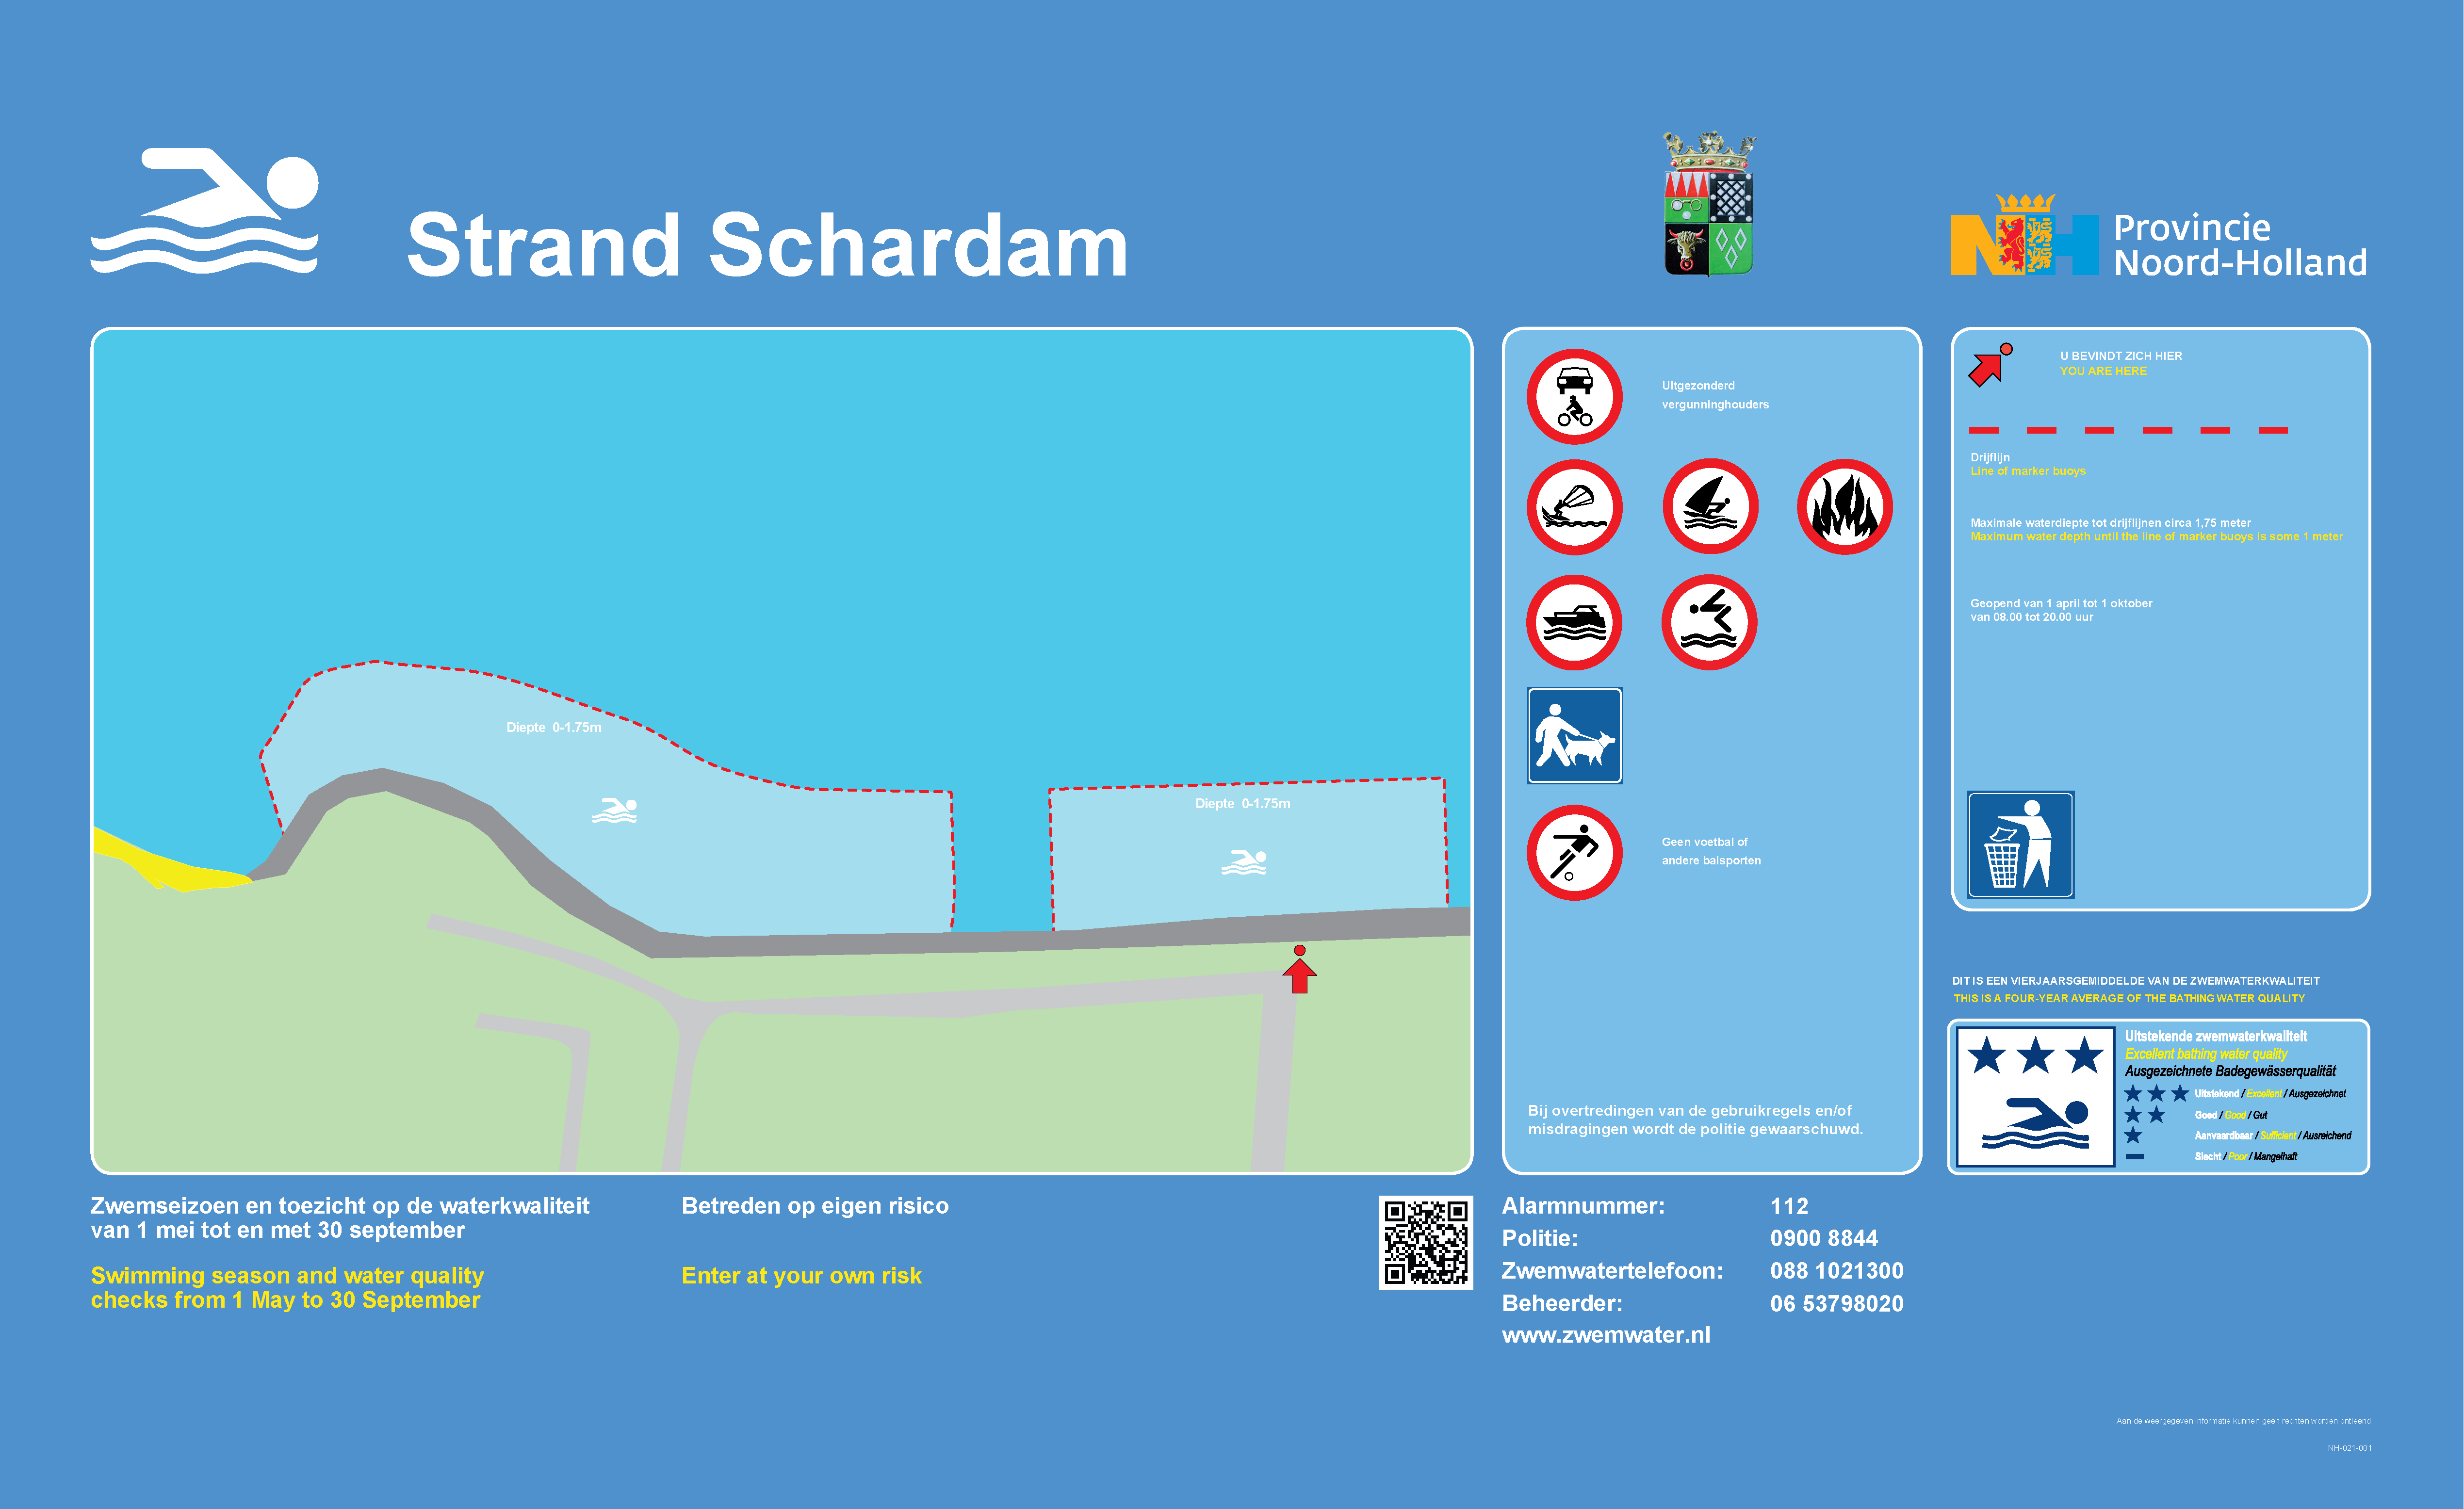 Het informatiebord bij zwemlocatie Strand Schardam